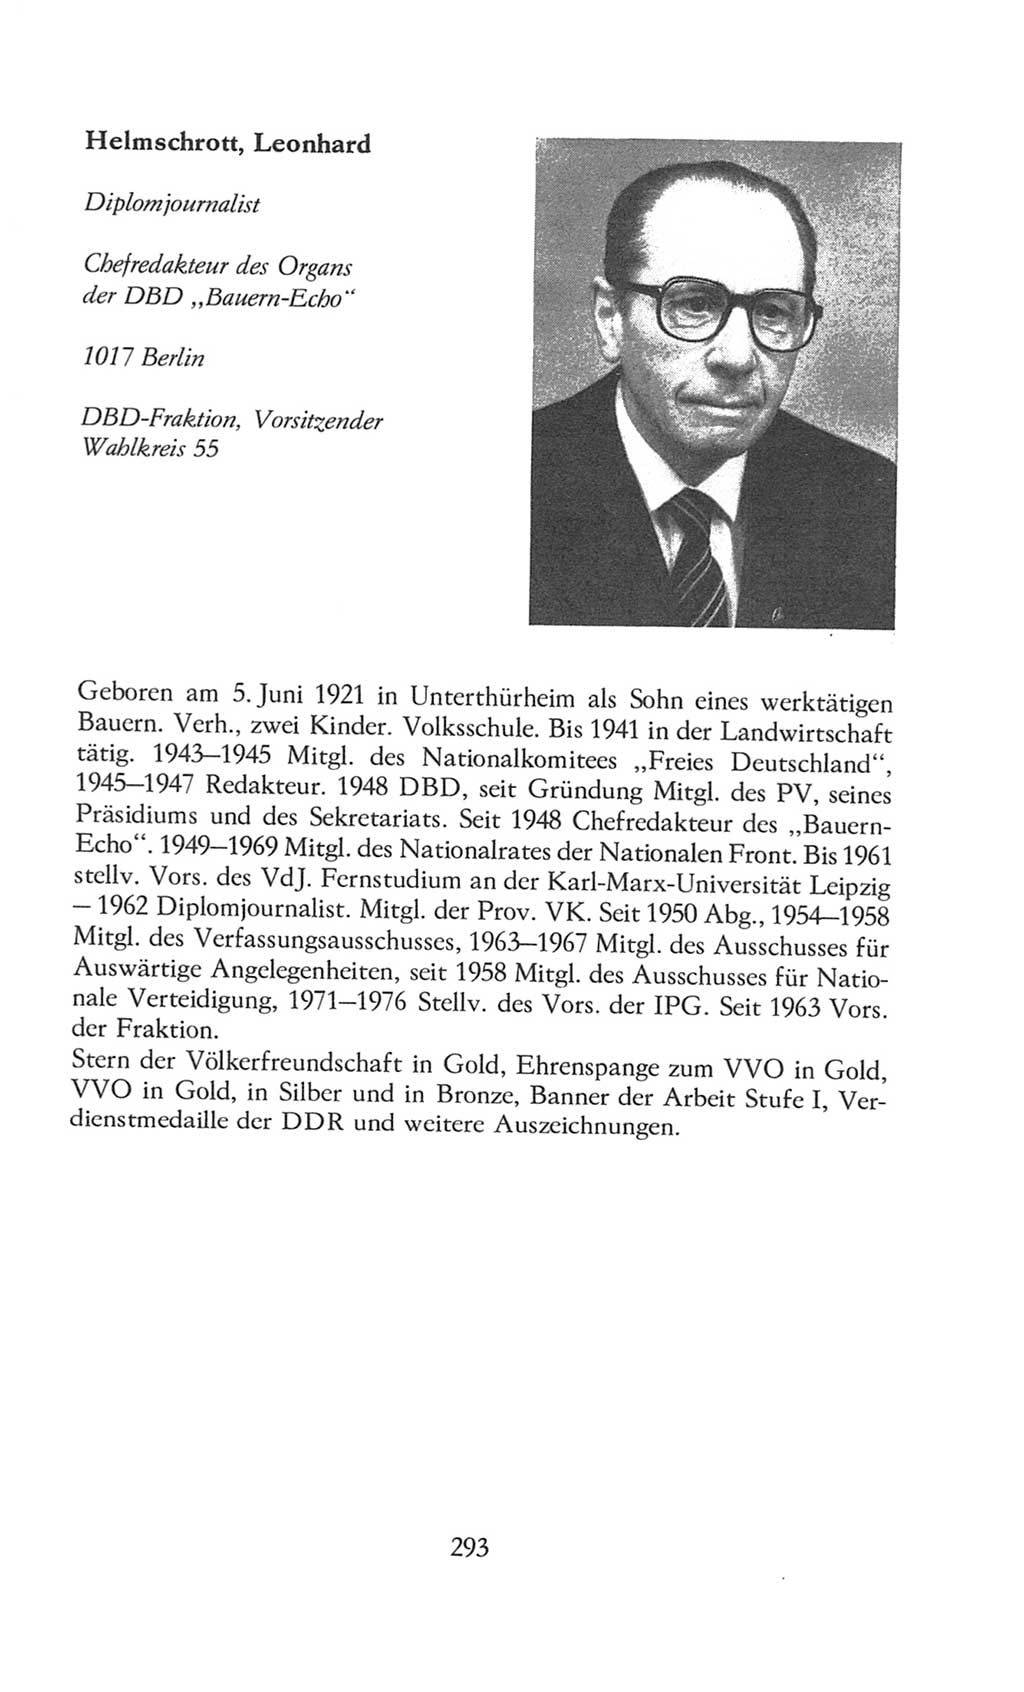 Volkskammer (VK) der Deutschen Demokratischen Republik (DDR), 8. Wahlperiode 1981-1986, Seite 293 (VK. DDR 8. WP. 1981-1986, S. 293)